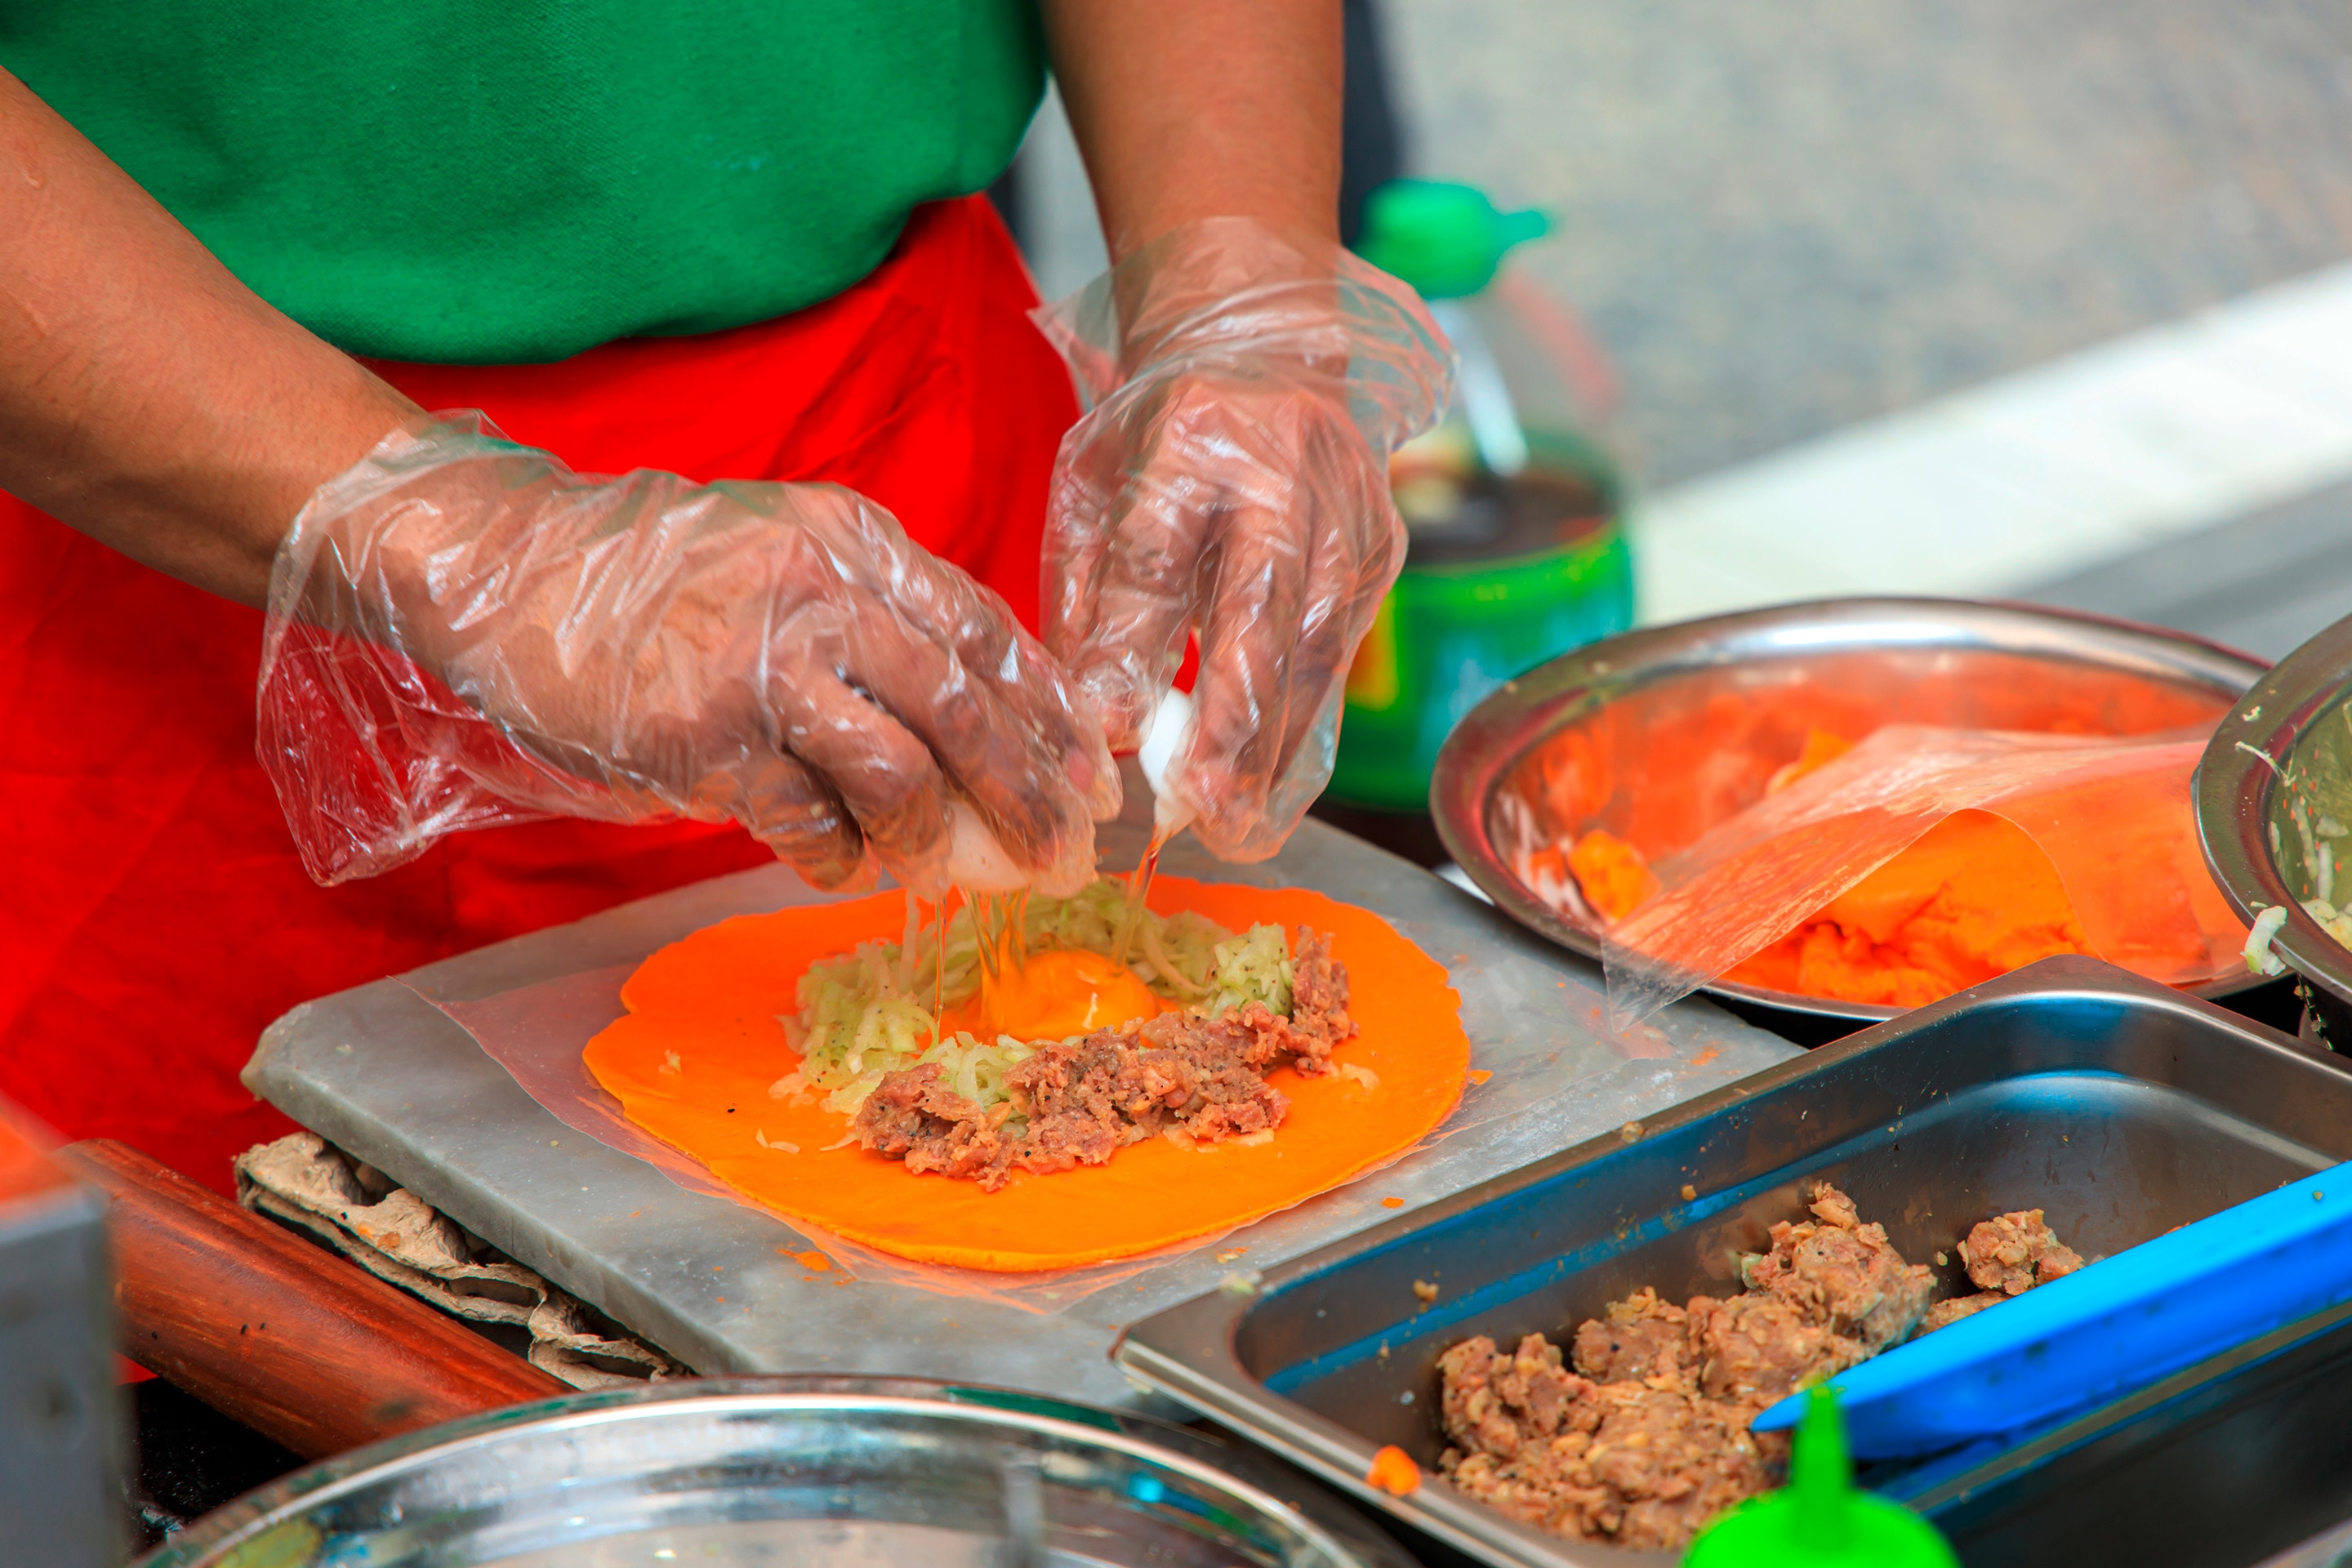 A person prepares Ilocos-style empanadas from scratch